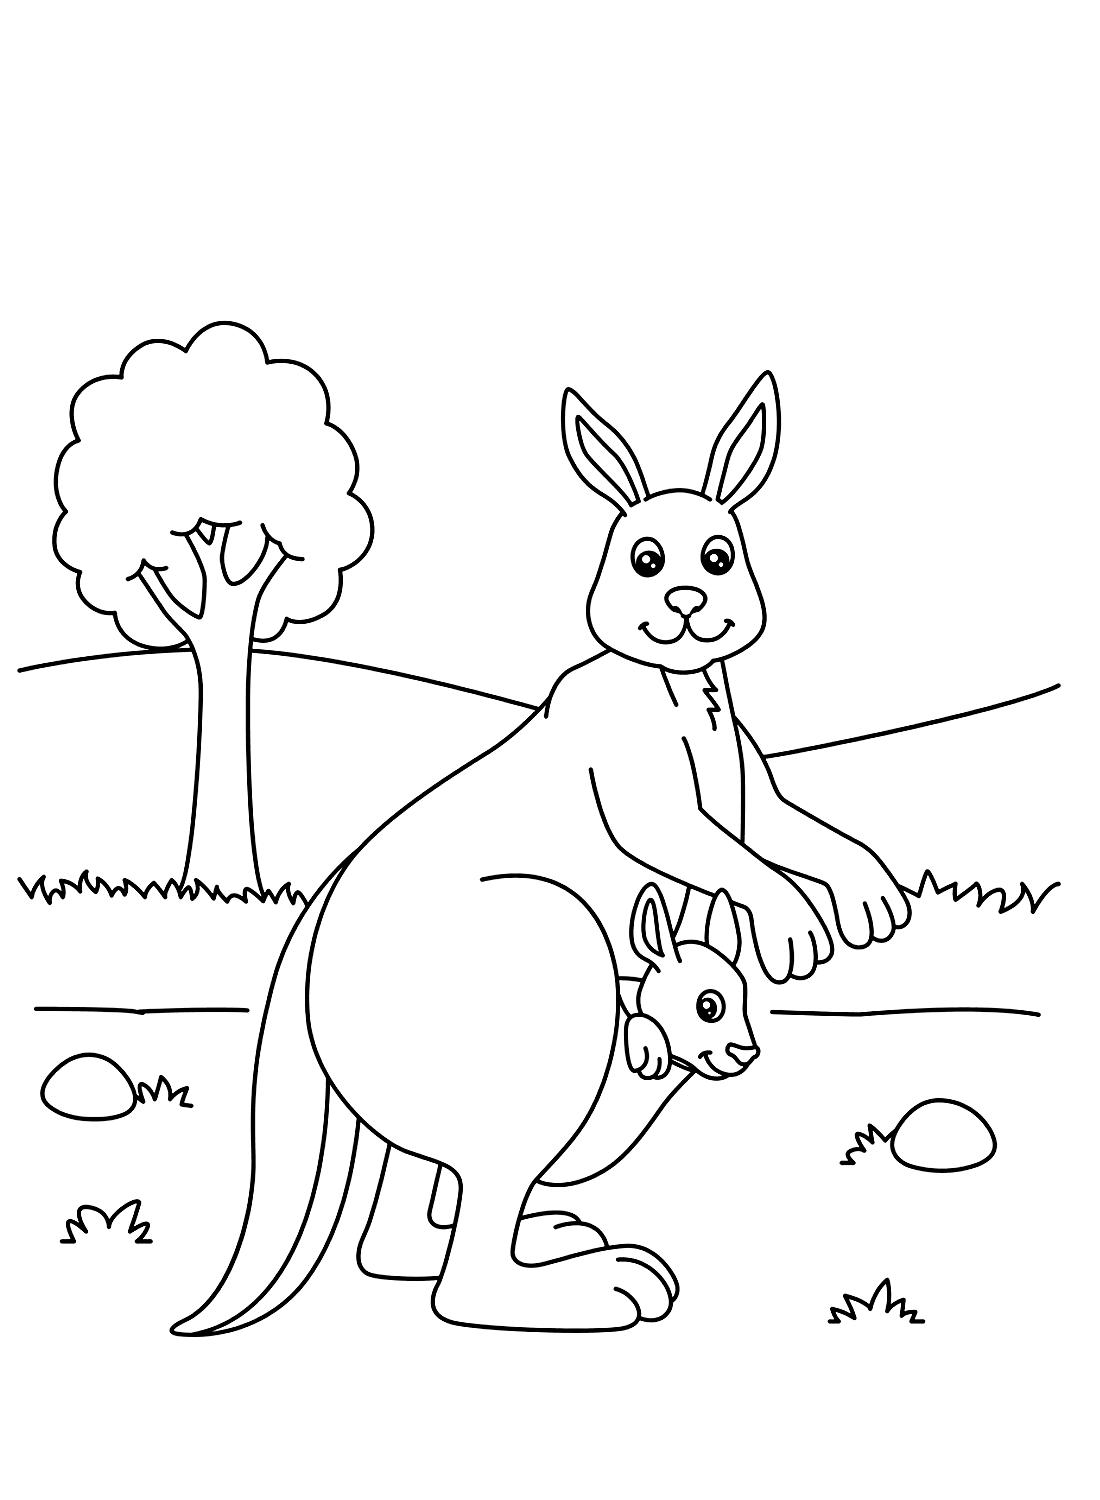 Мама-кенгуру и детеныш кенгуру из мультфильма "Кенгуру"